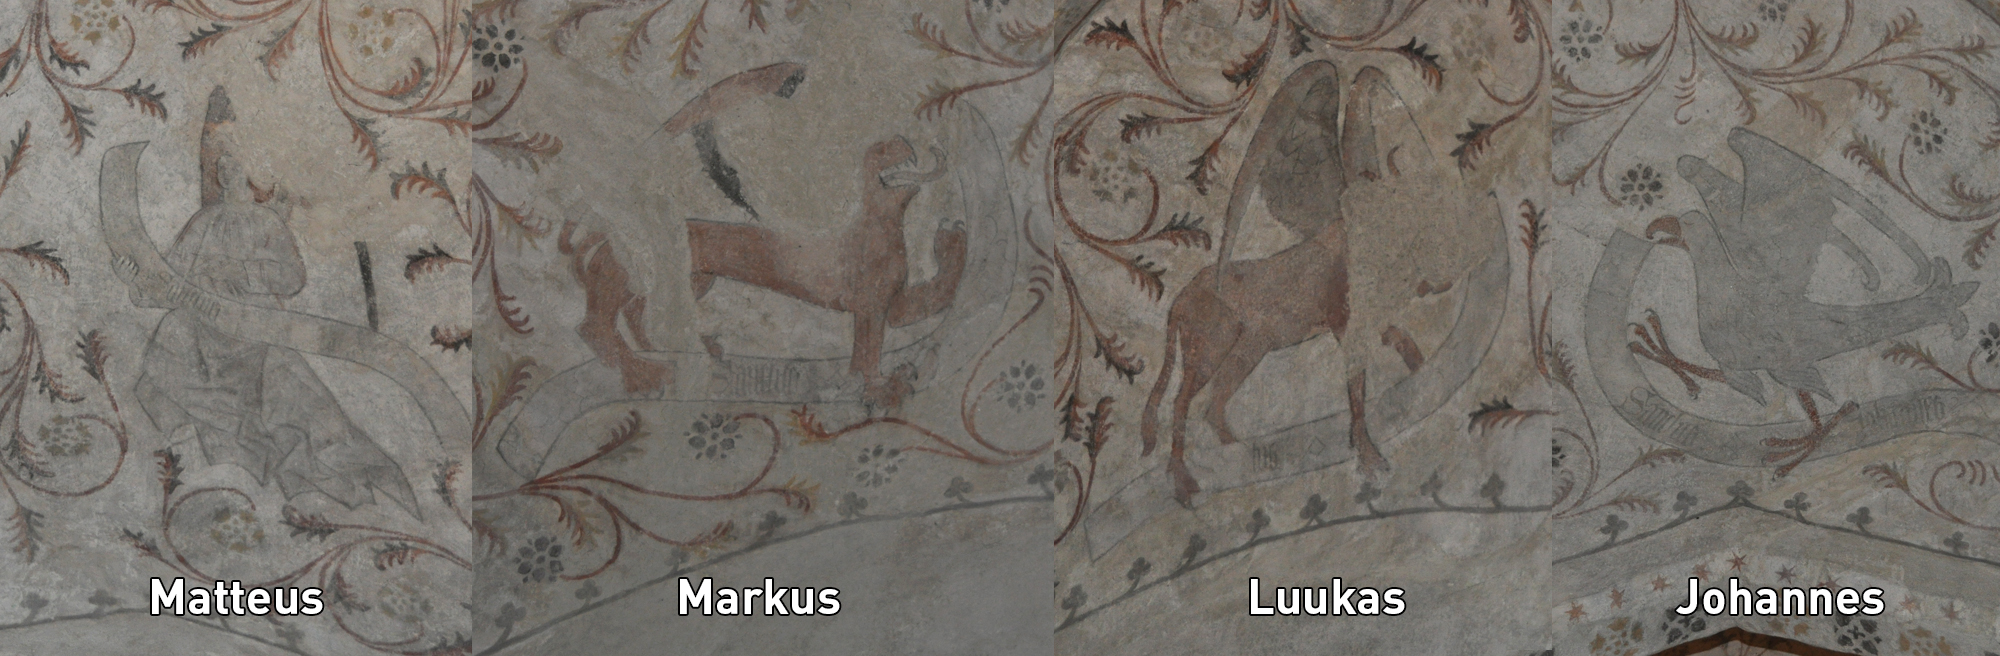 Kattomaalauksissa ihminen (Matteus), lievästi huvittavan näköinen leijona (Markus), härkä (Luukas) ja kotka (Johannes)